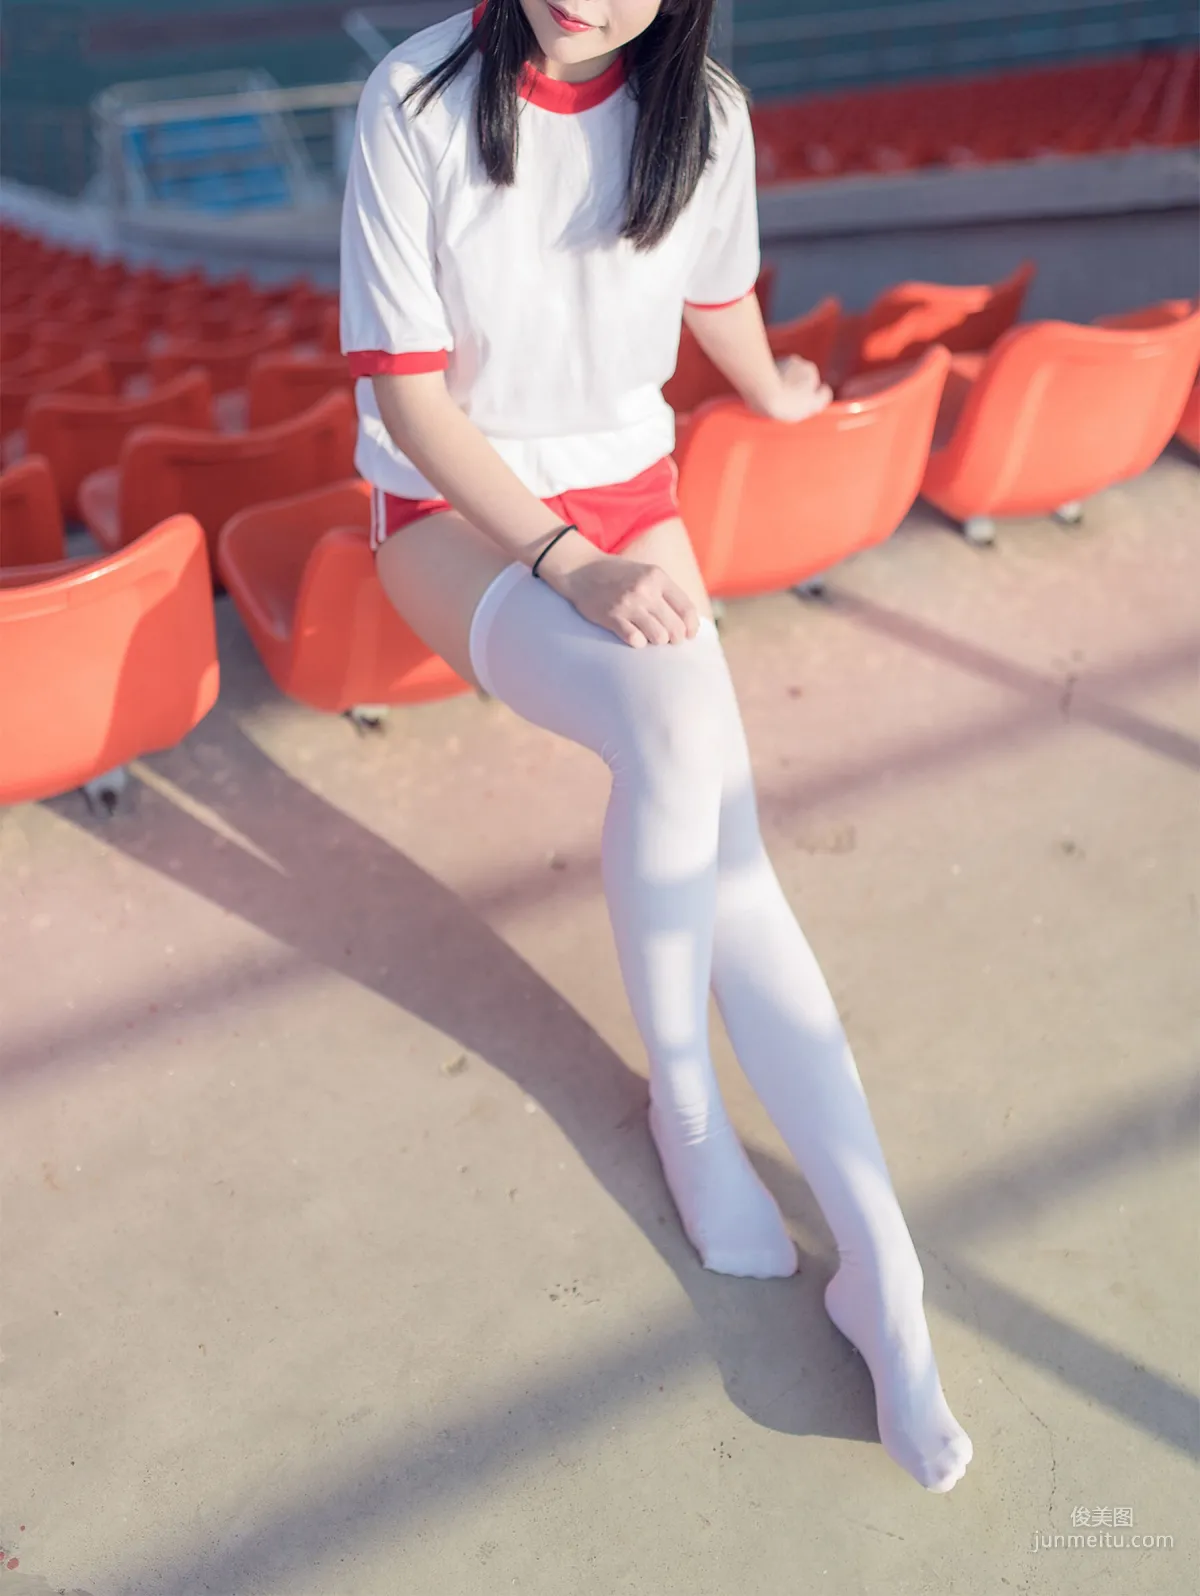 [风之领域] NO.112 运动场上的白丝体操服少女 写真集42